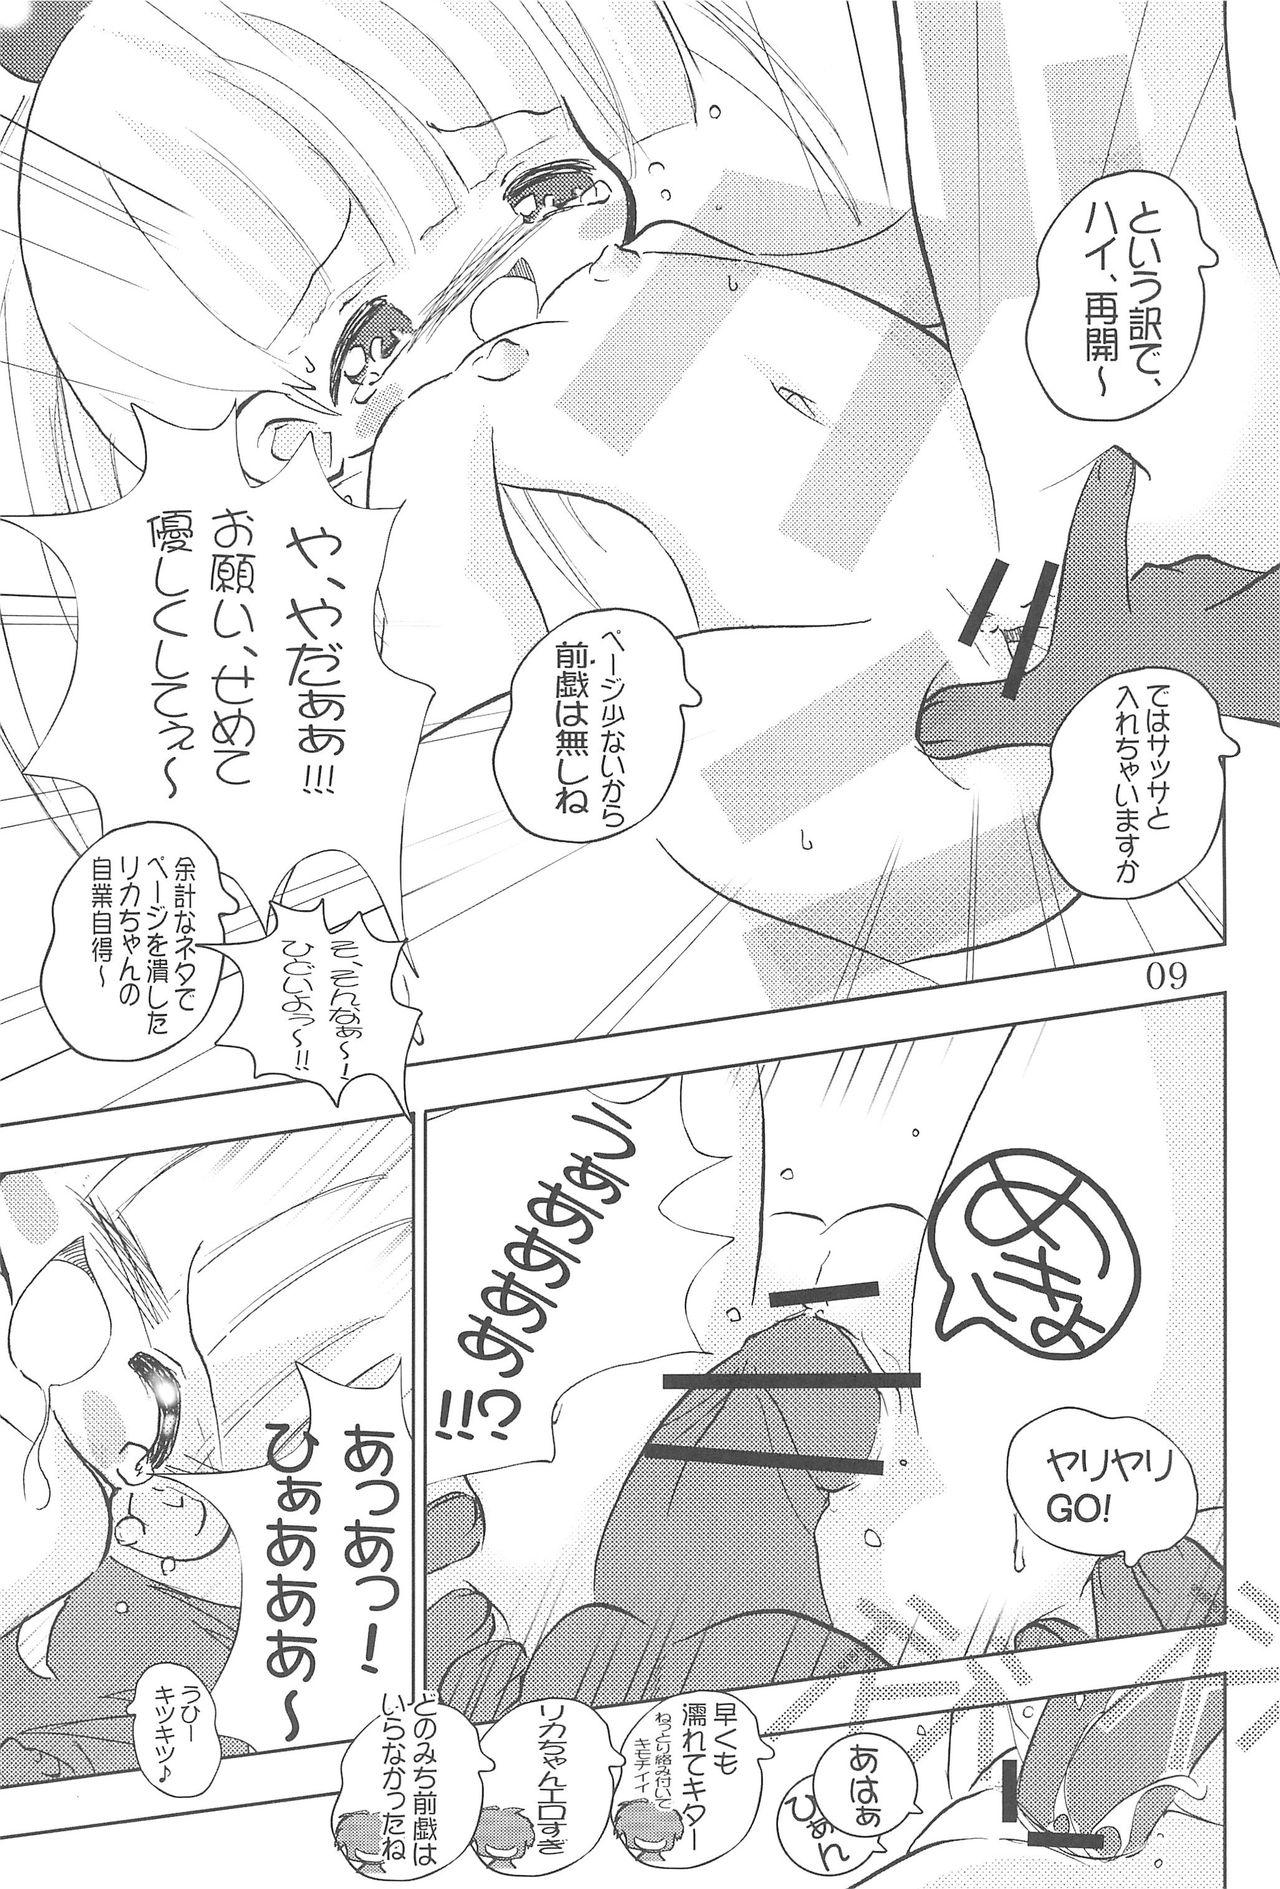 Liveshow WataRika - Shuukan watashi no onii-chan Licca vignette Reverse - Page 11